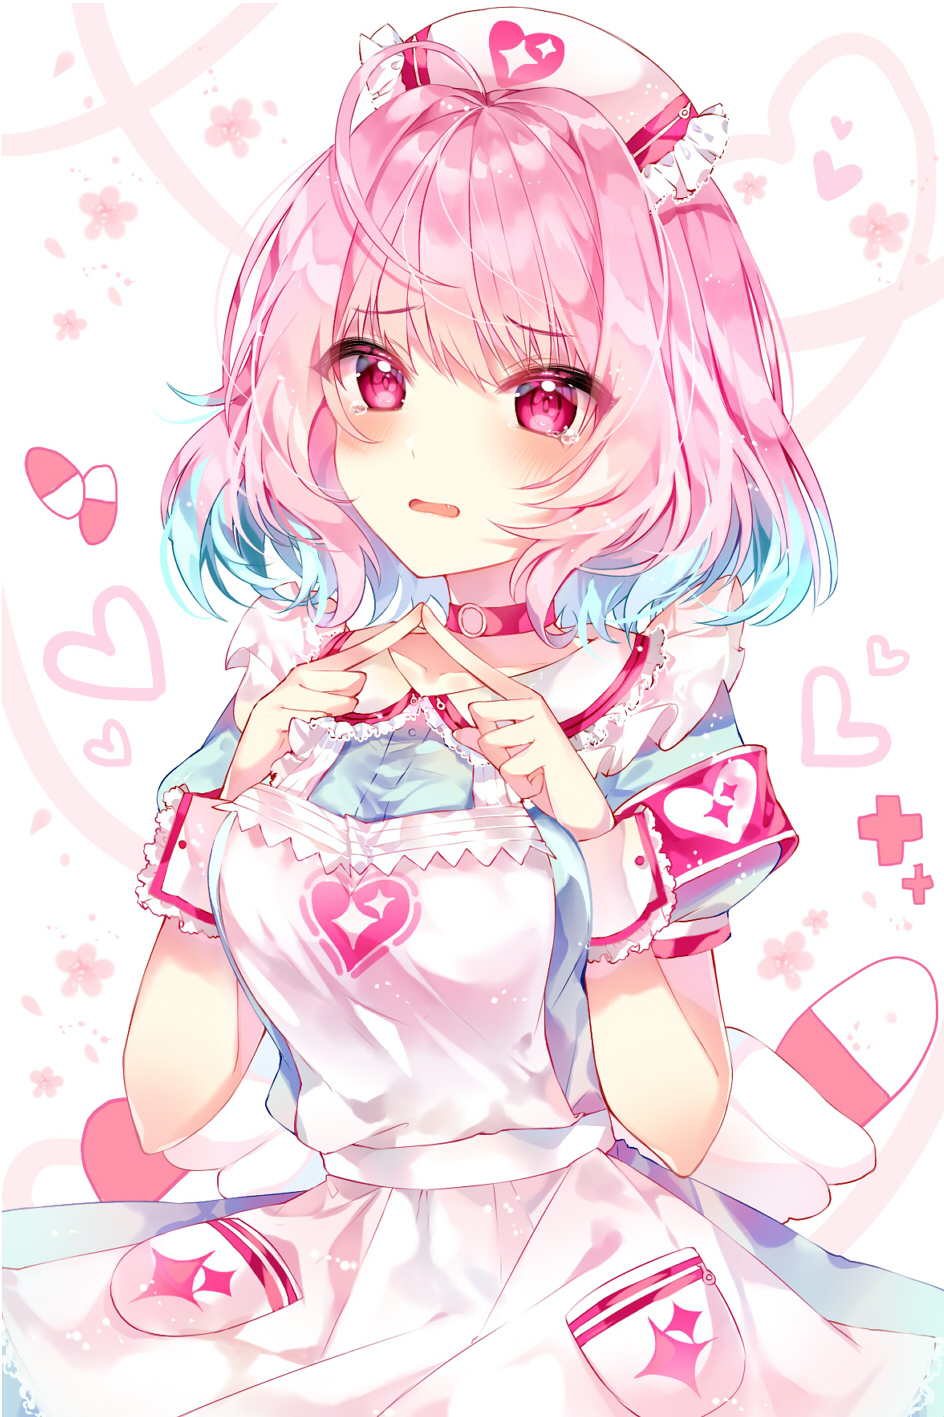 Kết quả hình ảnh cho anime girl pink hair